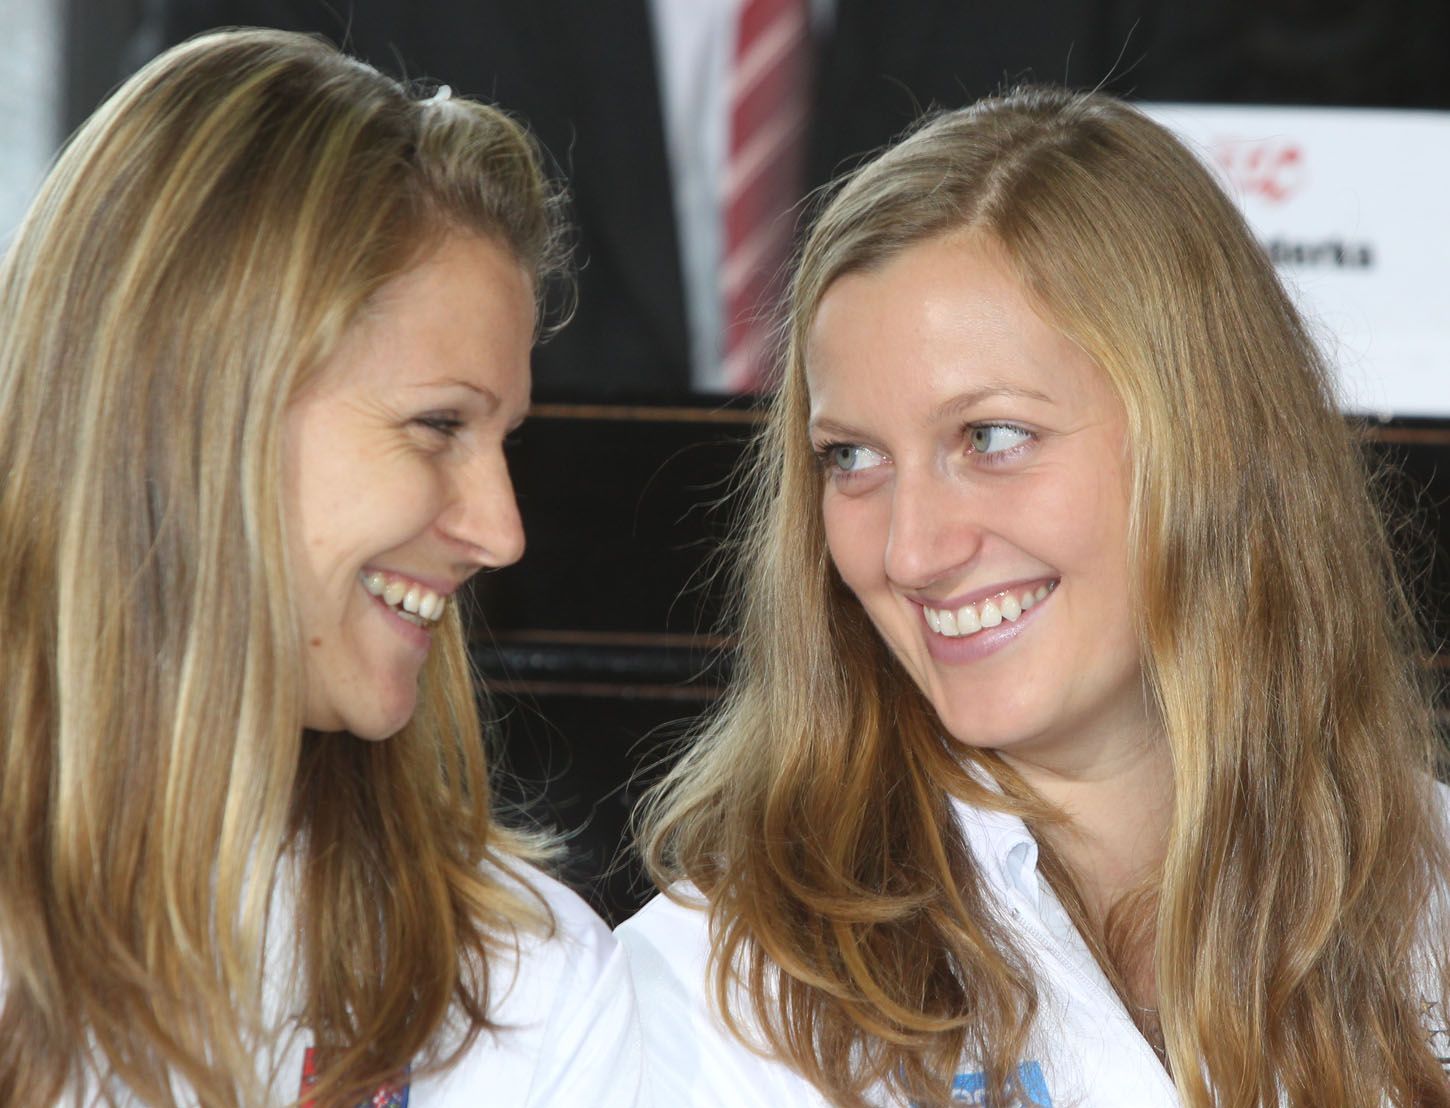 České tenistky Lucie Šafářová a Petra Kvitová během losu ve finále Fed Cupu 2012.